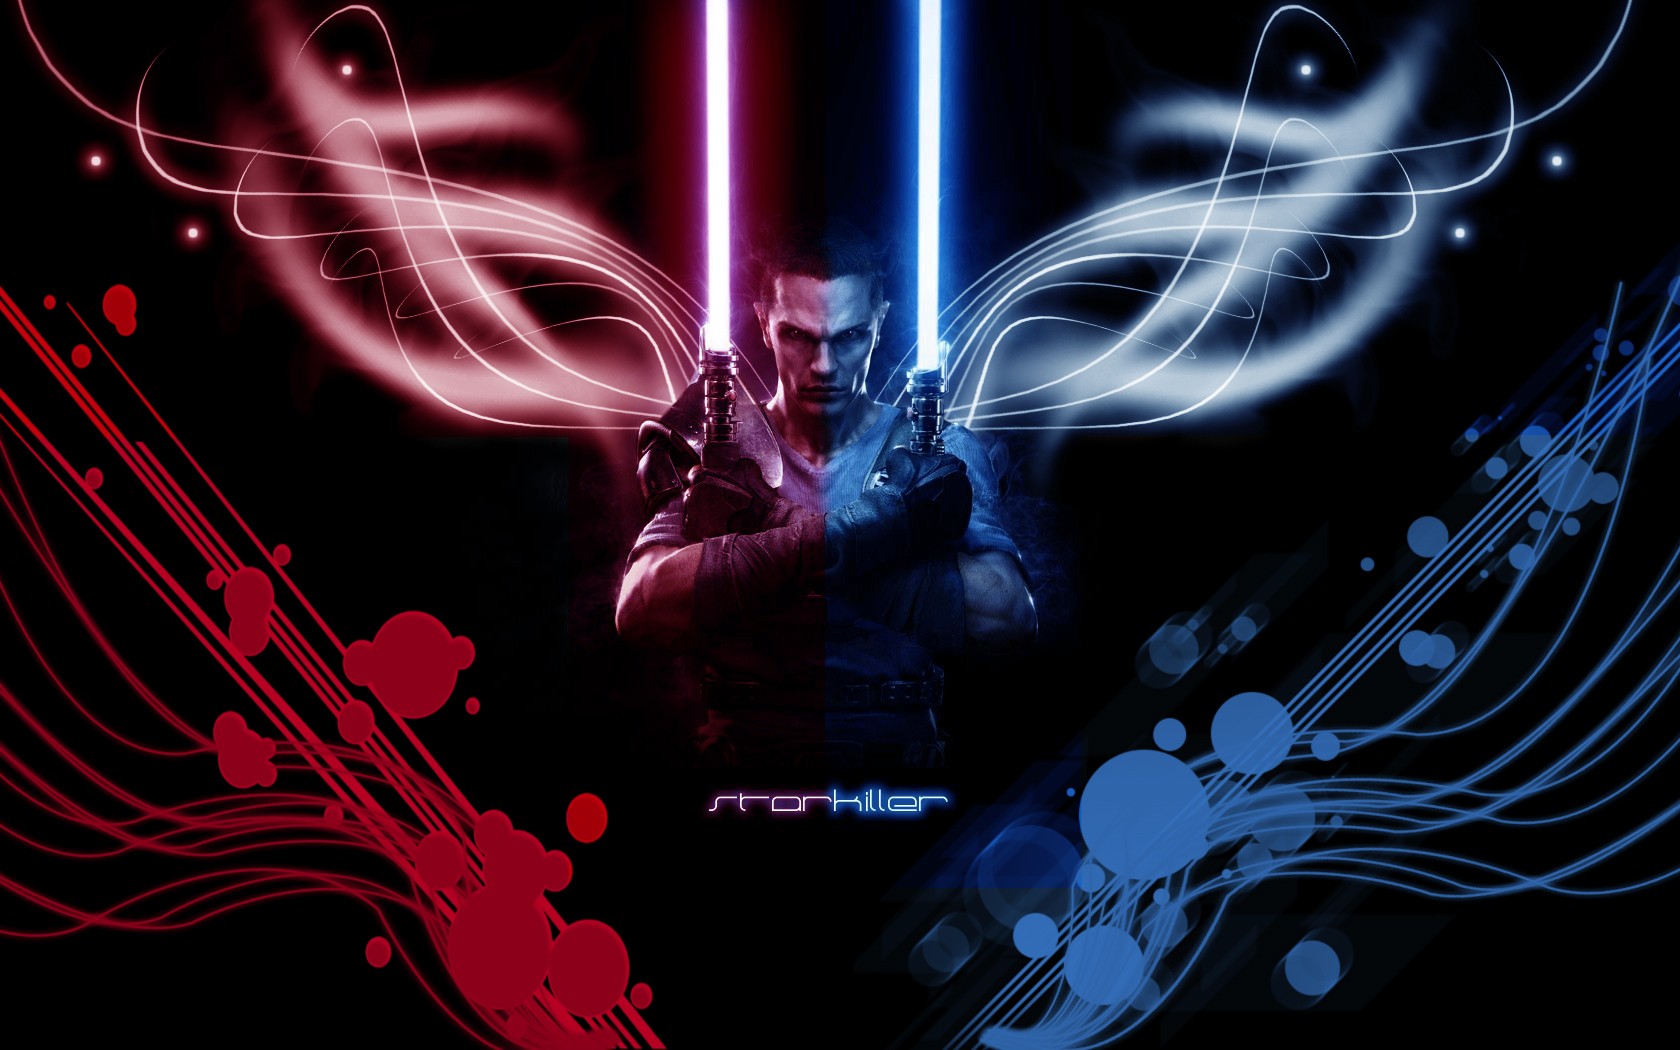 Starkiller Star Wars The Force Unleashed Video Games Lightsaber Digital Art Shapes 1680x1050